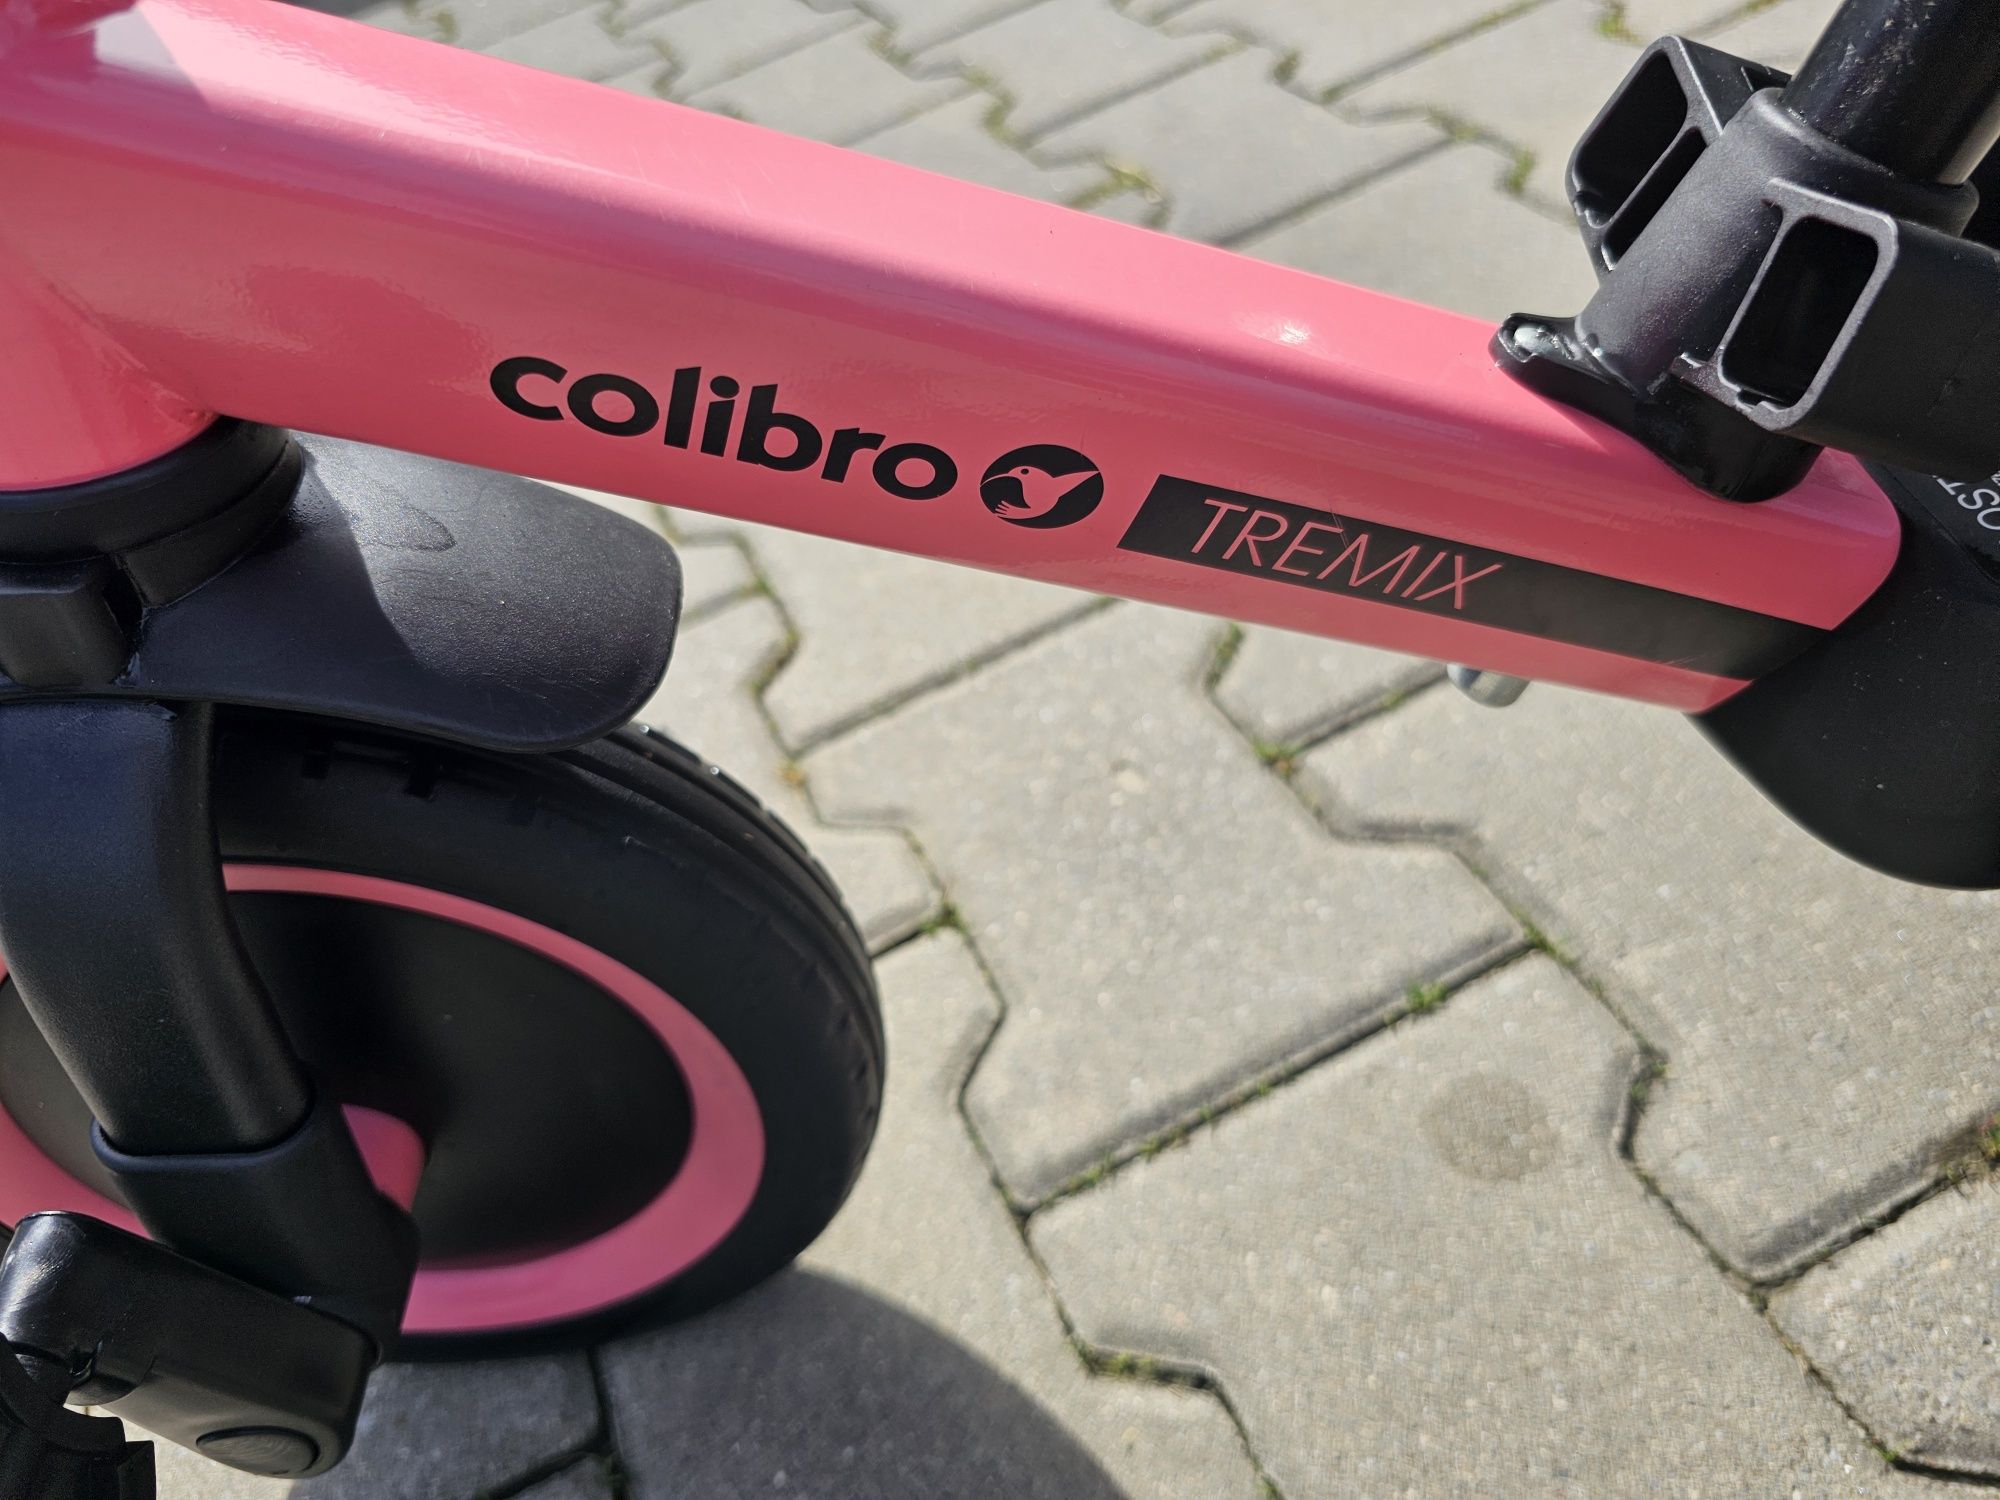 Collibro TREMIX 4w1 rowerek biegowy, jeździk 12m+